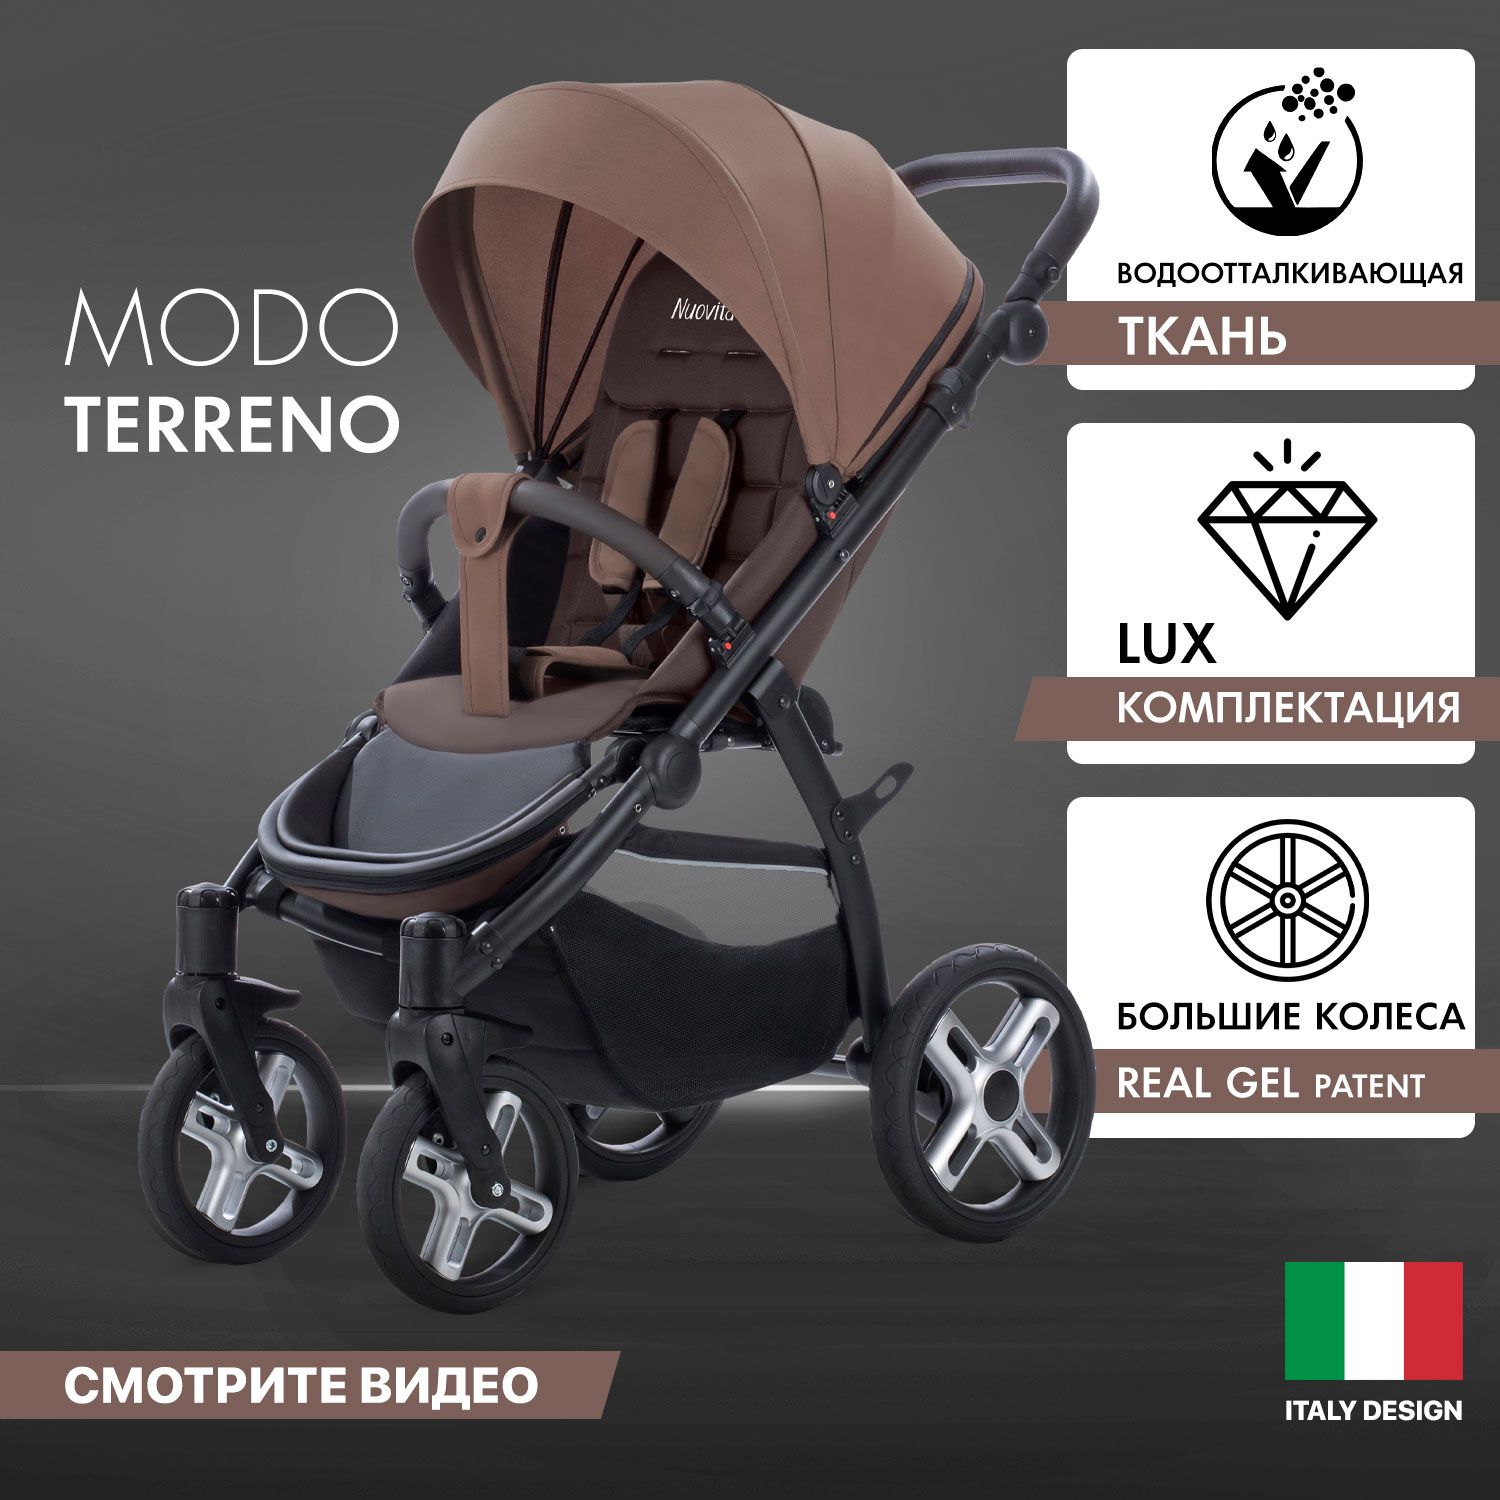 Прогулочная коляска Nuovita Modo Terreno Marrone scuro/Темно-коричневый